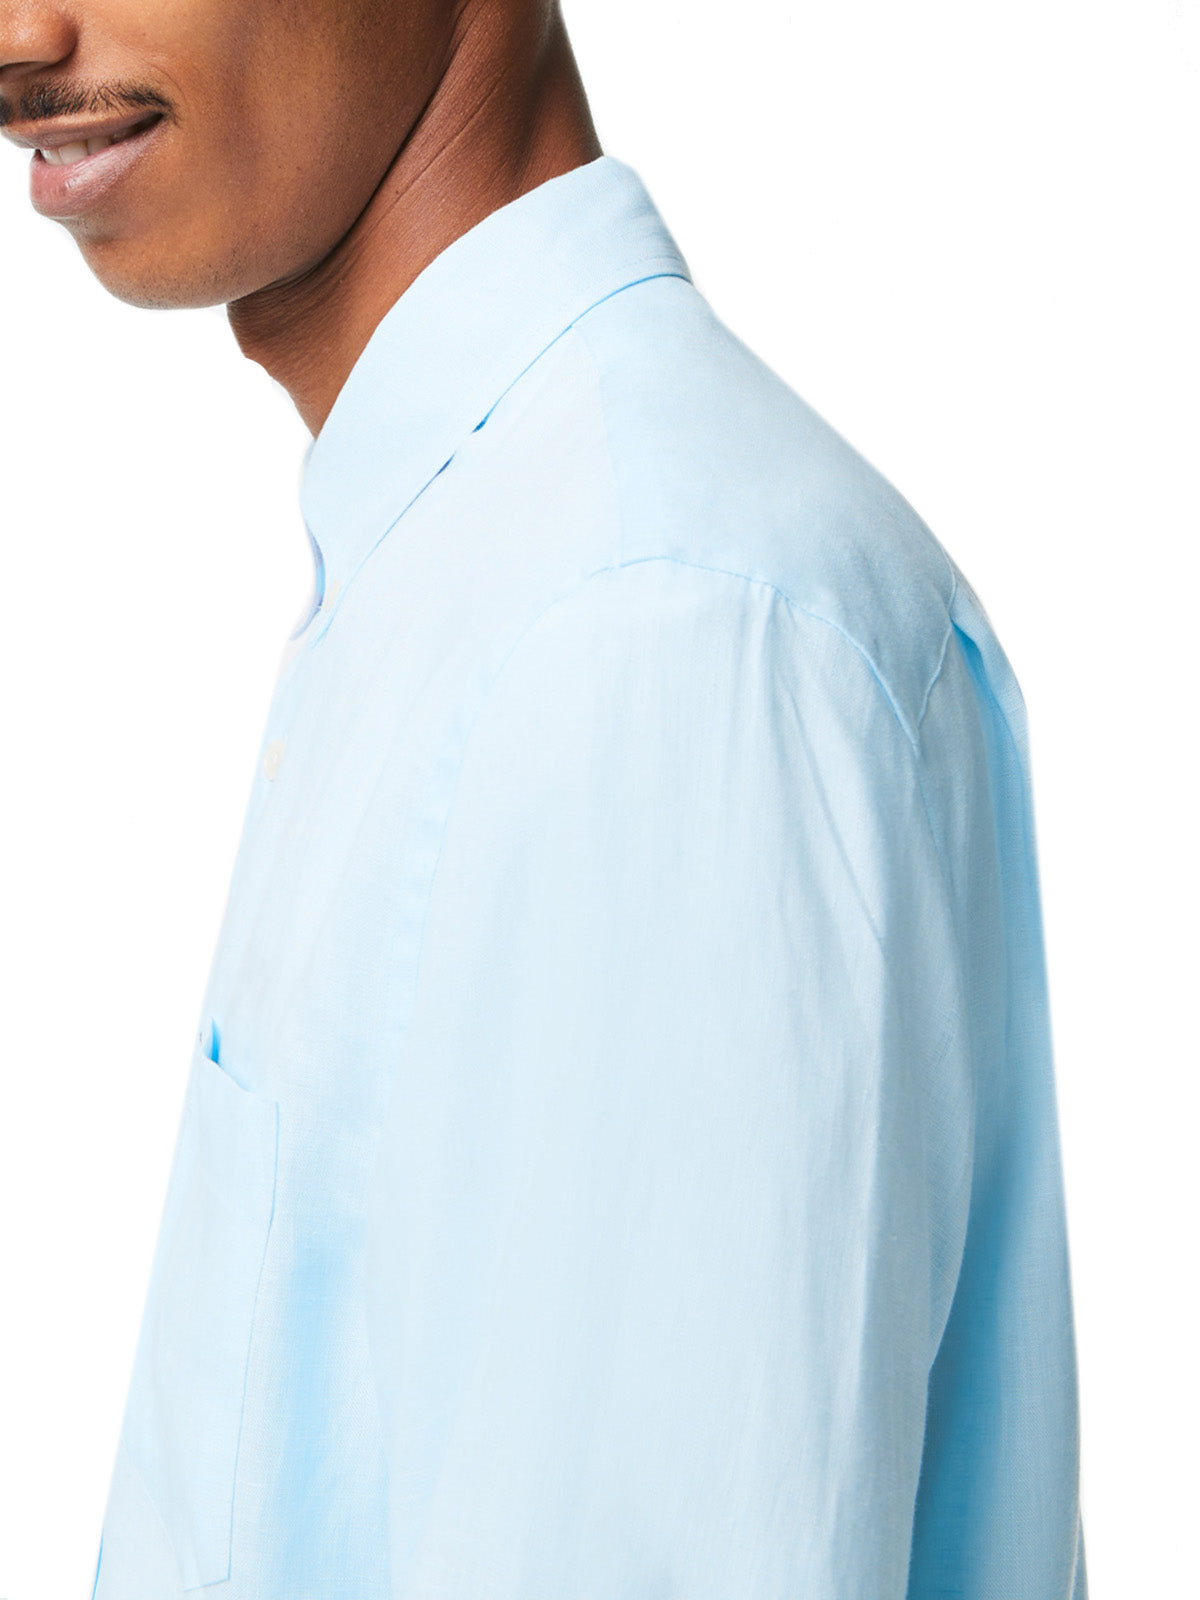 Camicie casual Uomo Lacoste - Camicia Da Uomo Di Lino Lacoste Regular Fit - Celeste